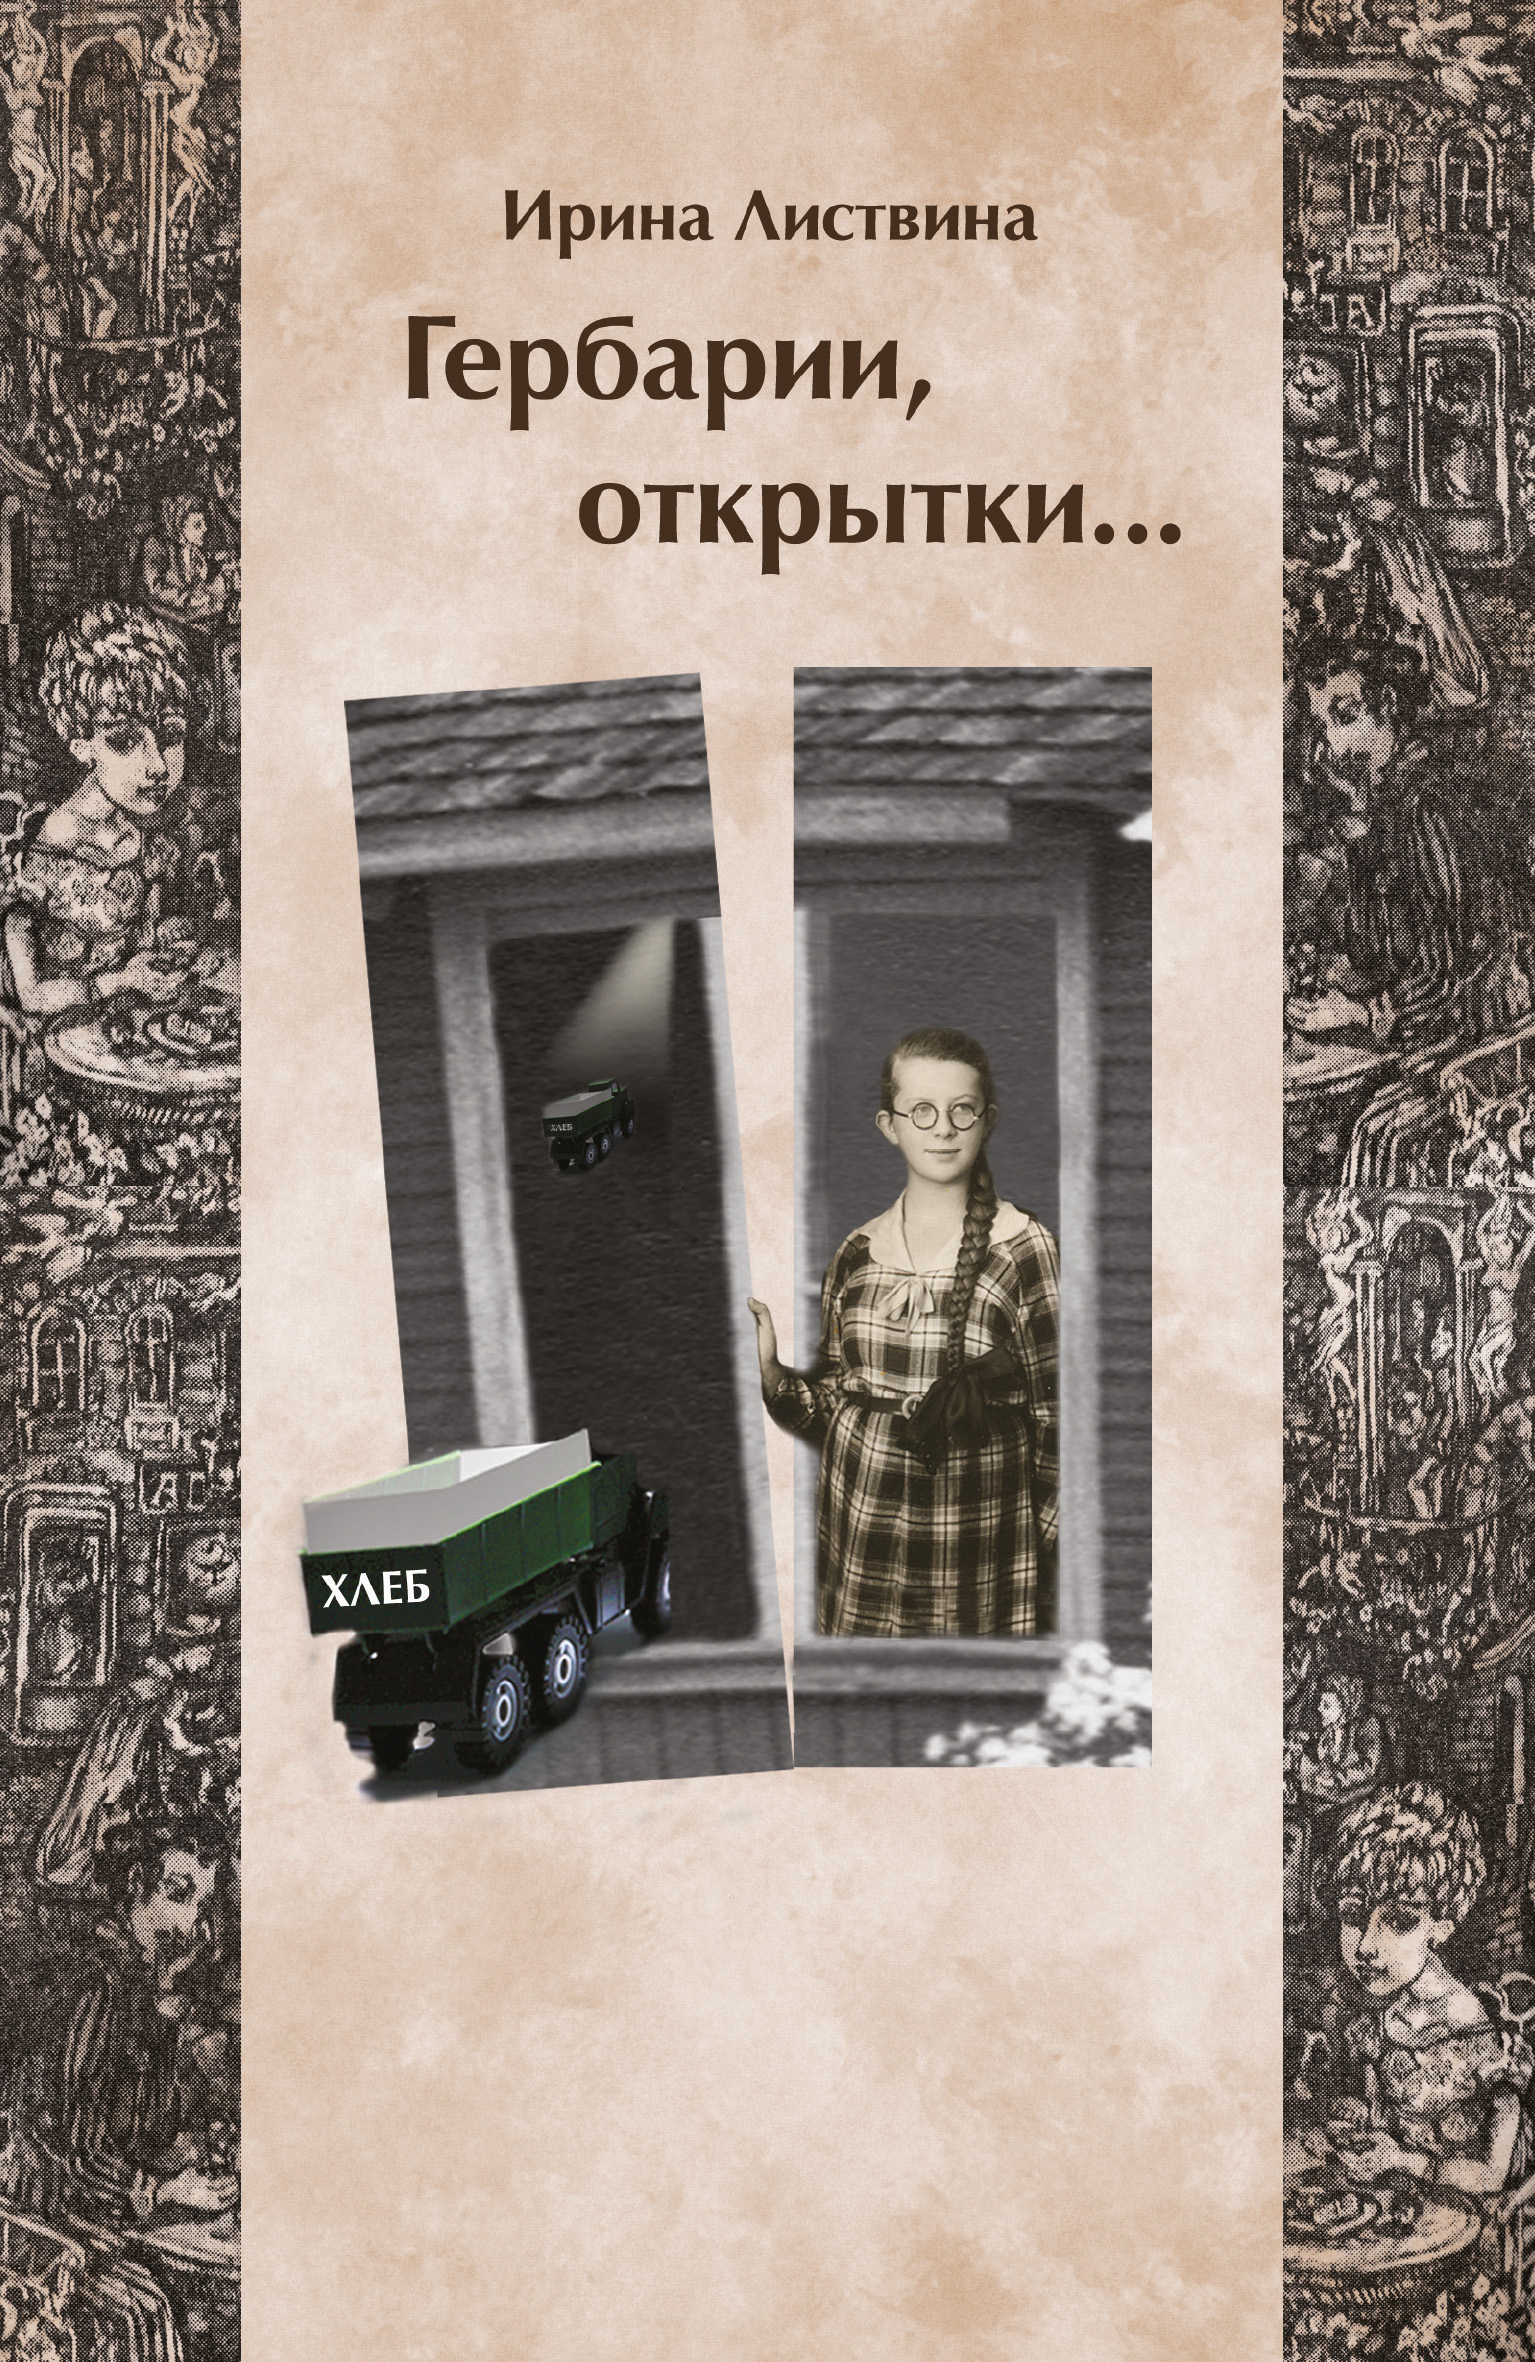 Книга Гербарии, открытки… из серии , созданная Ирина Листвина, может относится к жанру Биографии и Мемуары. Стоимость электронной книги Гербарии, открытки… с идентификатором 28261207 составляет 149.90 руб.